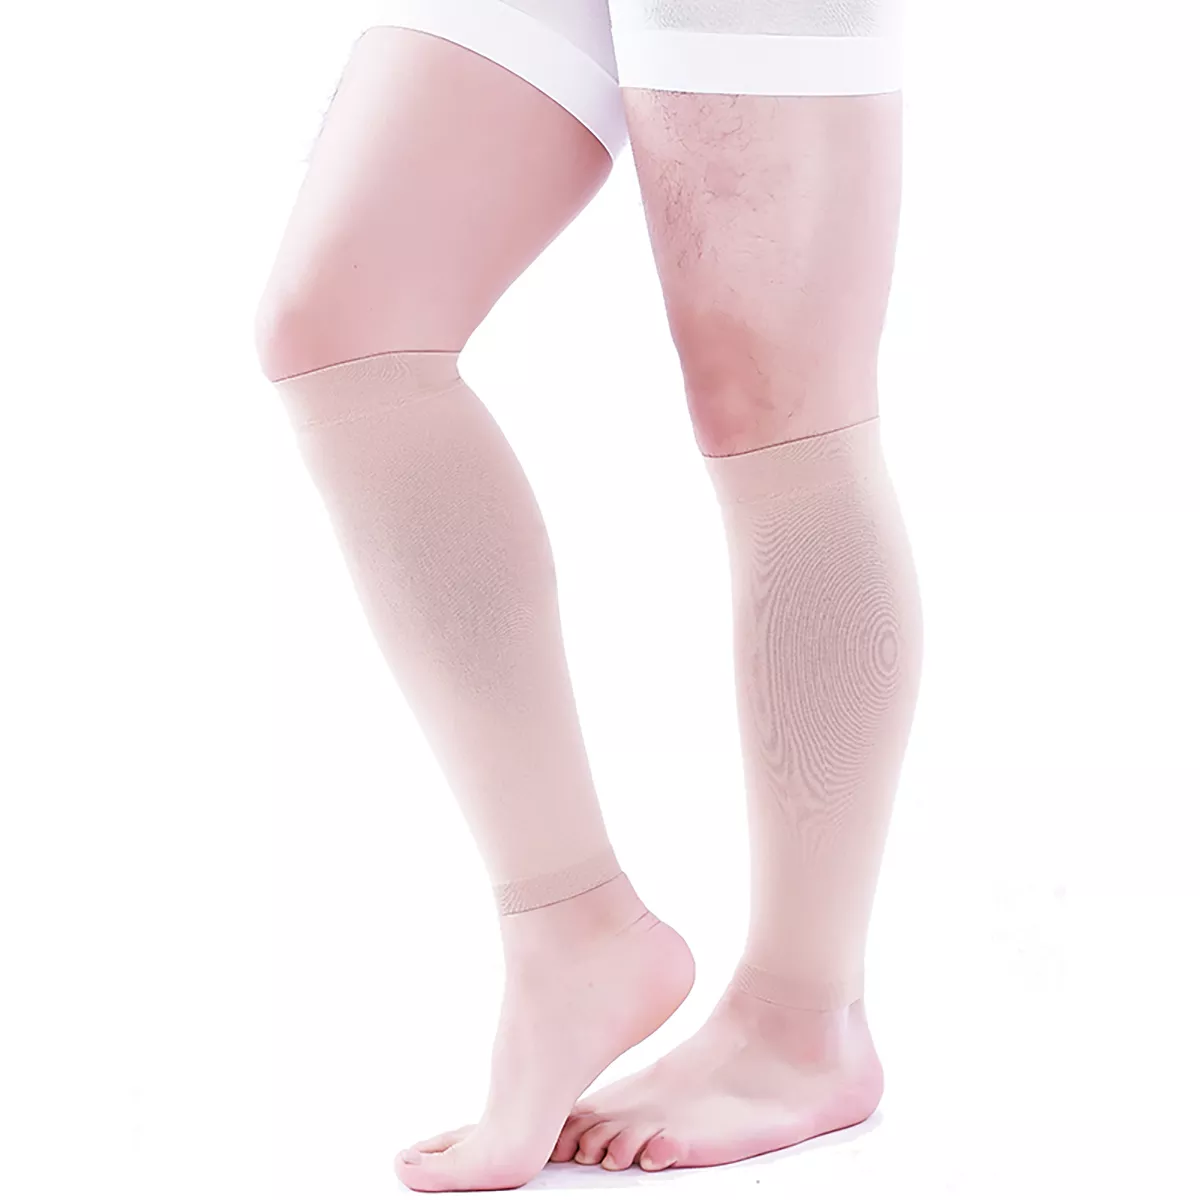 Varcoh ® 30-40 mmHg Men Calf Sleeve Compression Socks Beige